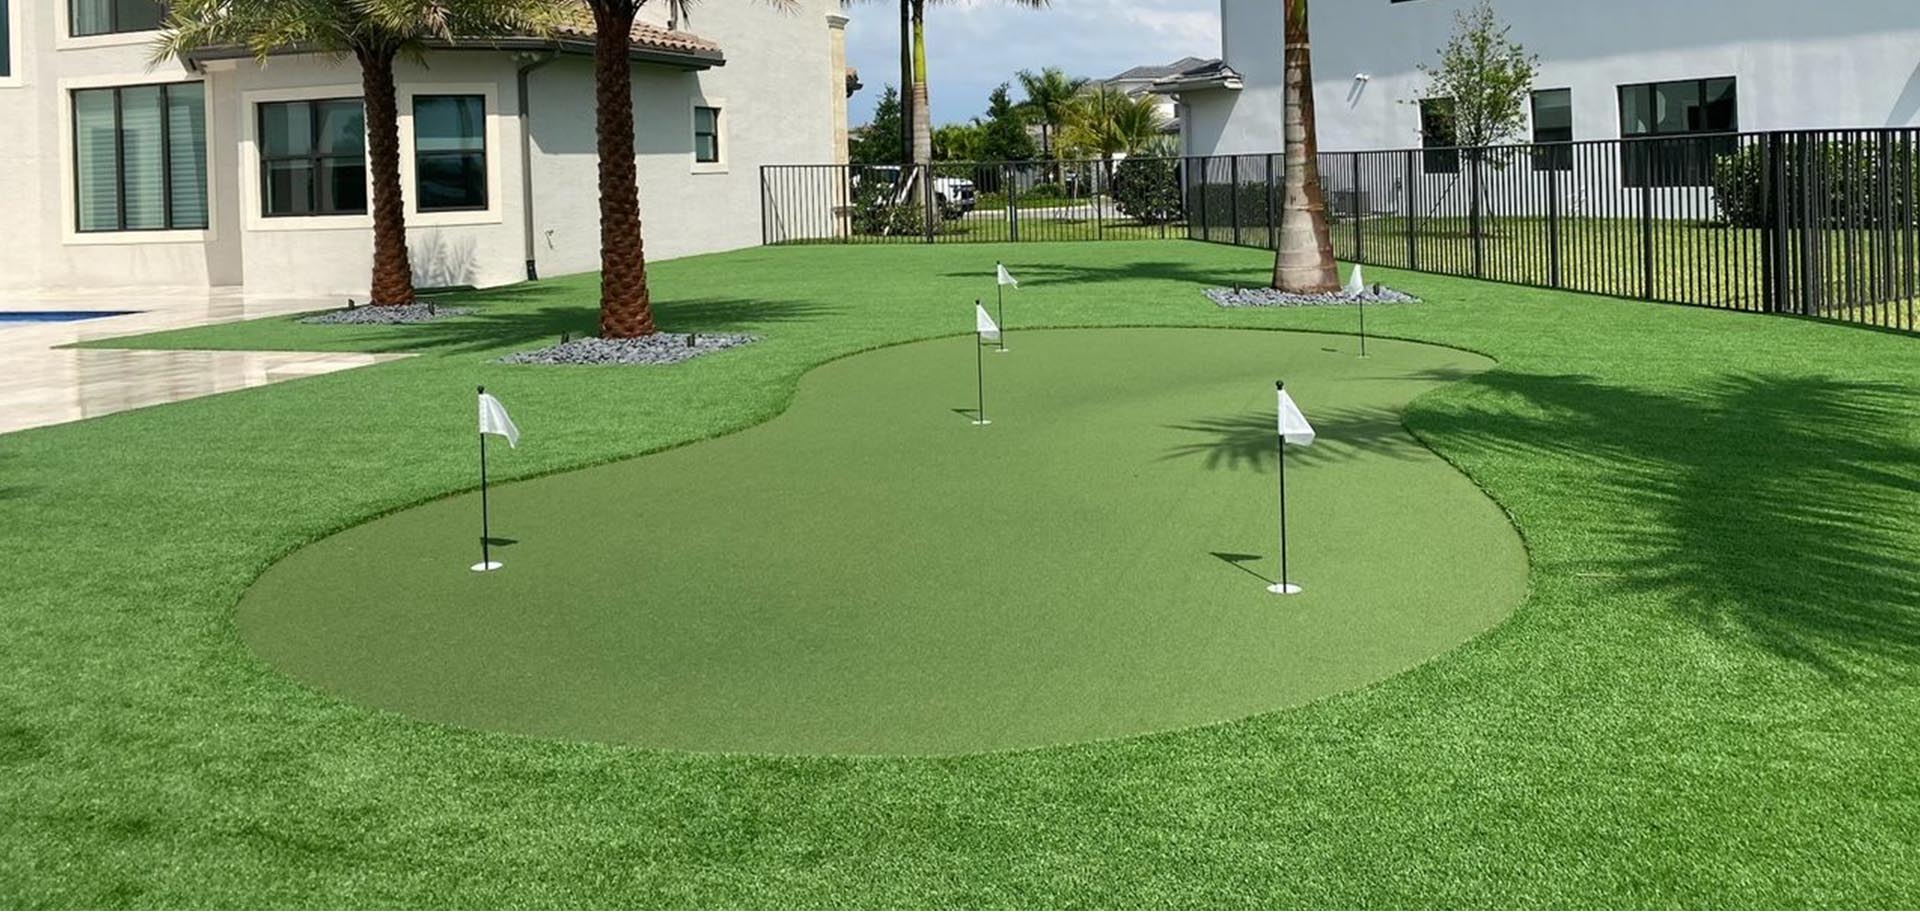 Jupiter Artificial Grass Installation, Synthetic Turf Installation and Putting Green Installation